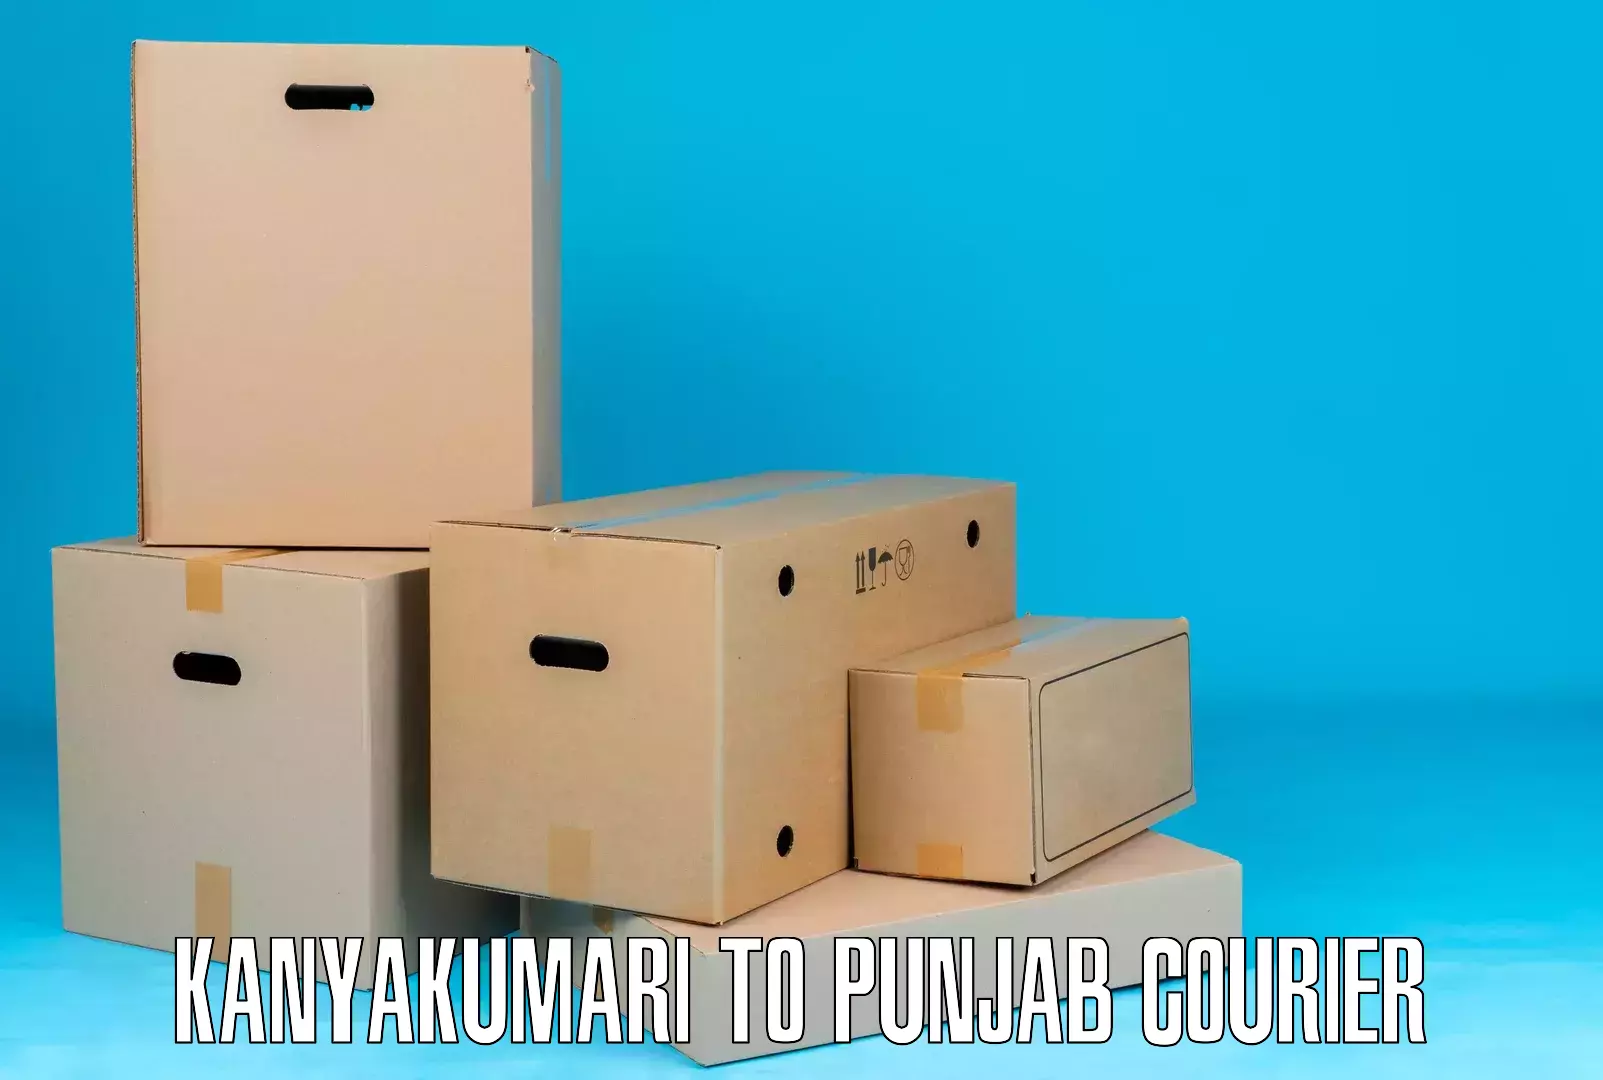 Express courier facilities Kanyakumari to Rupnagar